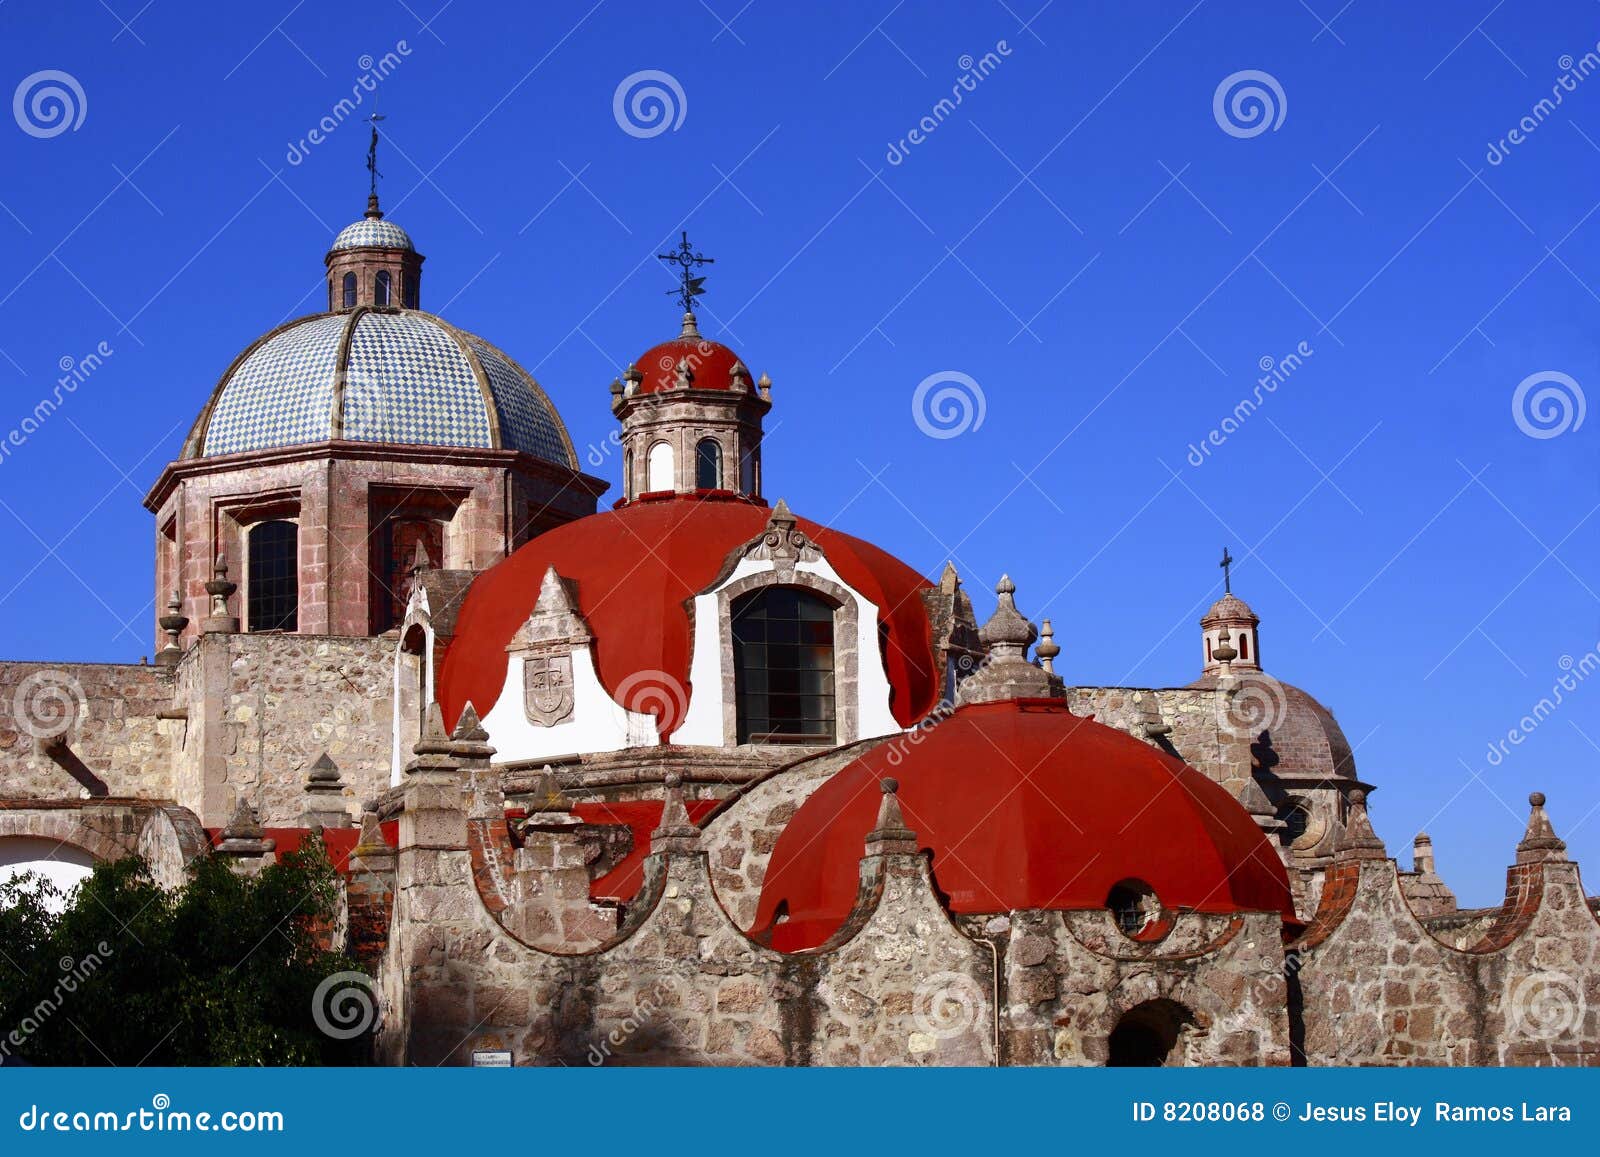 cupolas of convento del carmen in morelia, michoacan, mexico